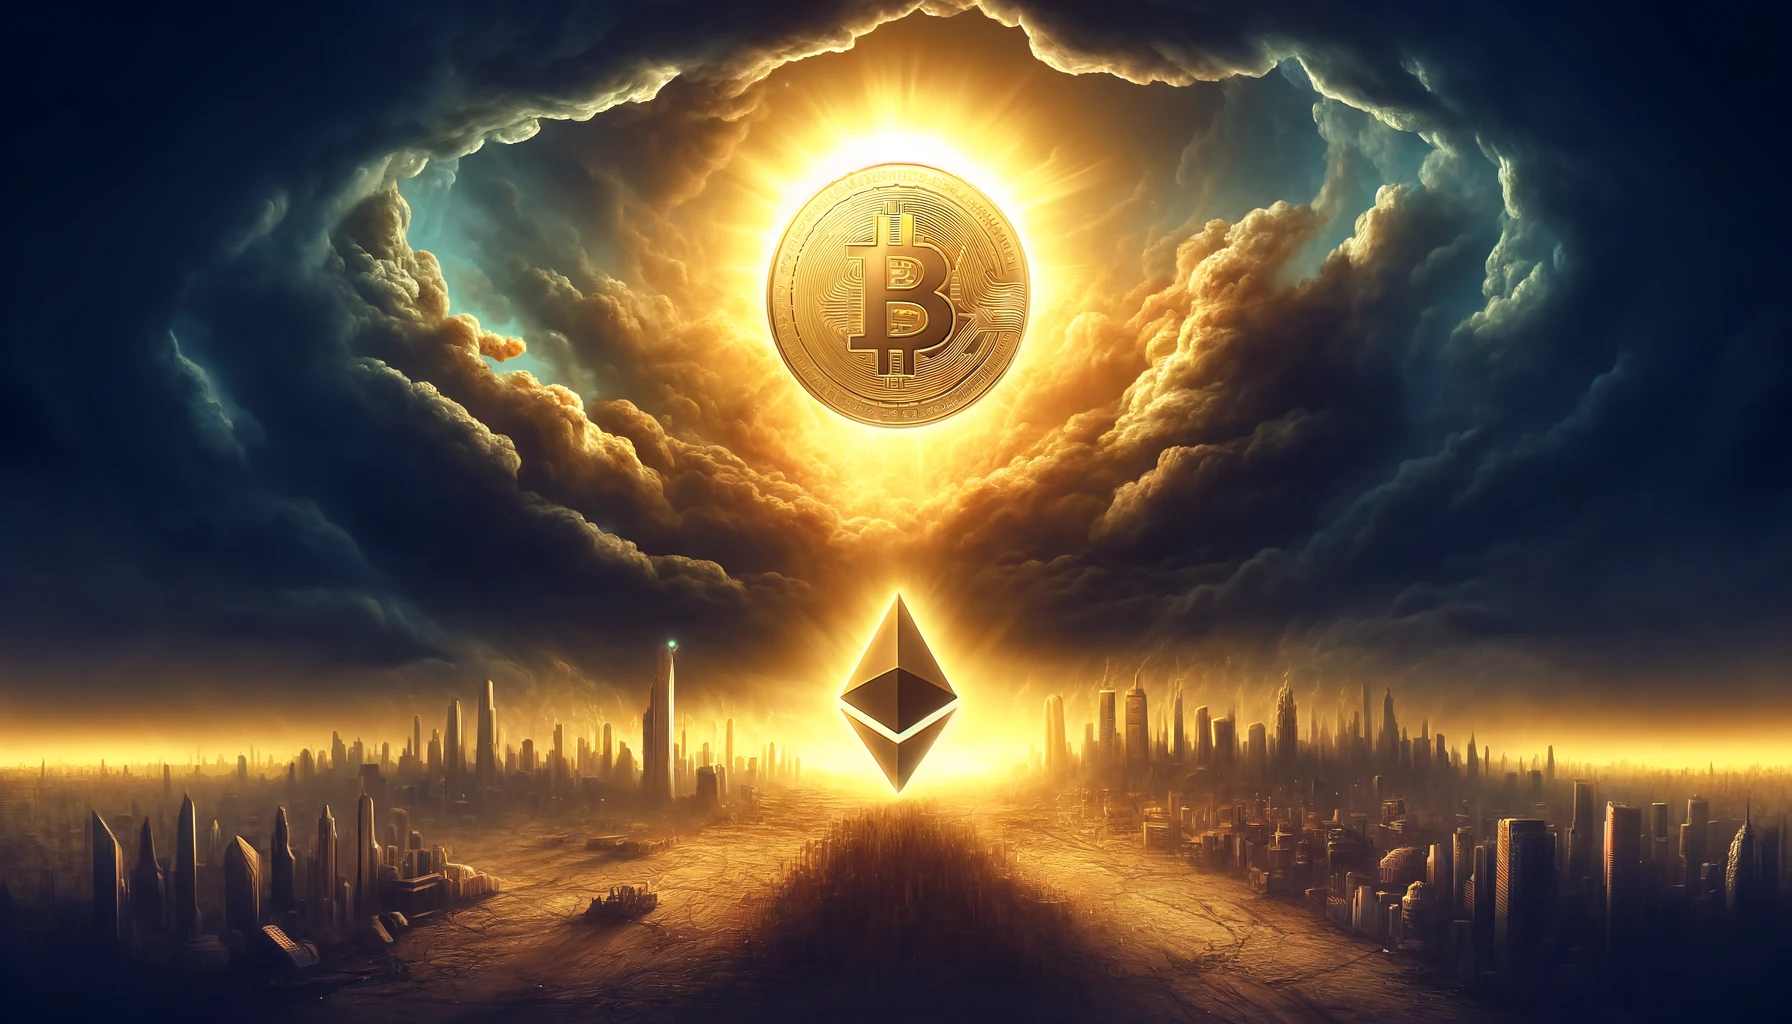 moneta bitcoin jaśniejąca na ciemnym niebie, na ziemi symbol ethereum pośród zgliszczy